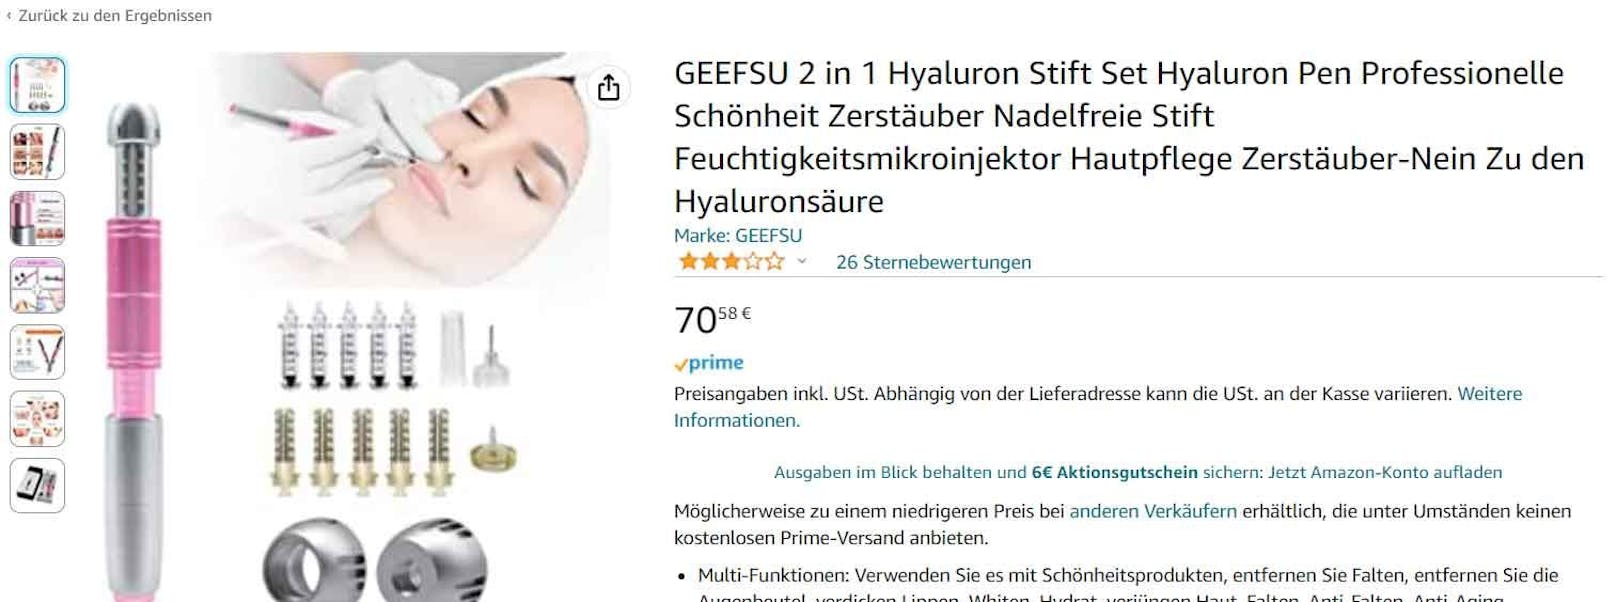 Hyaluron Pens werden unter anderem auf Plattformen wie Amazon angeboten. Vom angegebenen Hersteller fehlt online allerdings jede Spur.